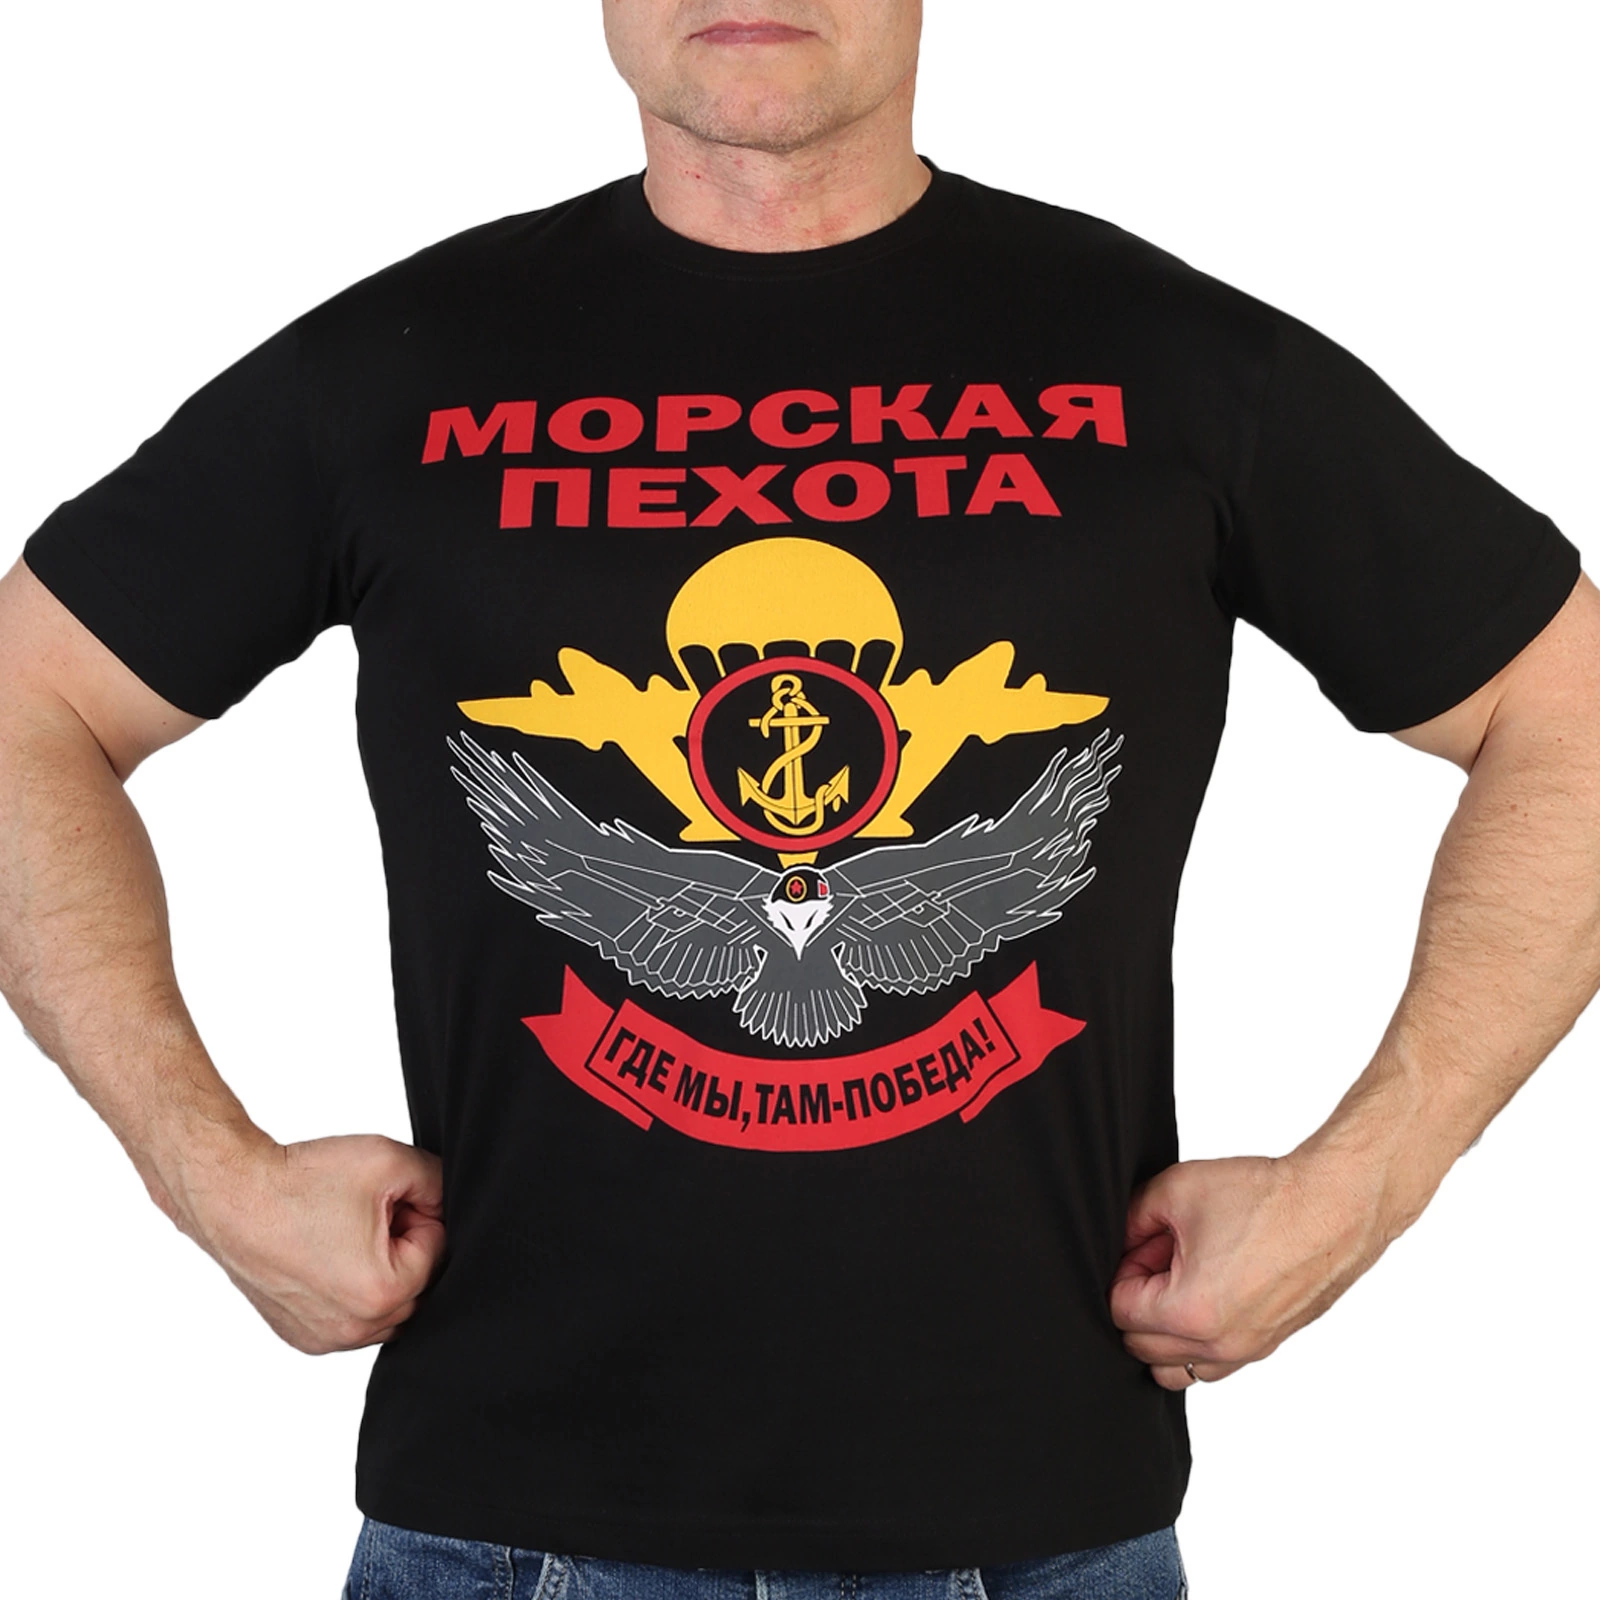 Мужская футболка Морской пехоты с девизом :"Где мы, там победа!"